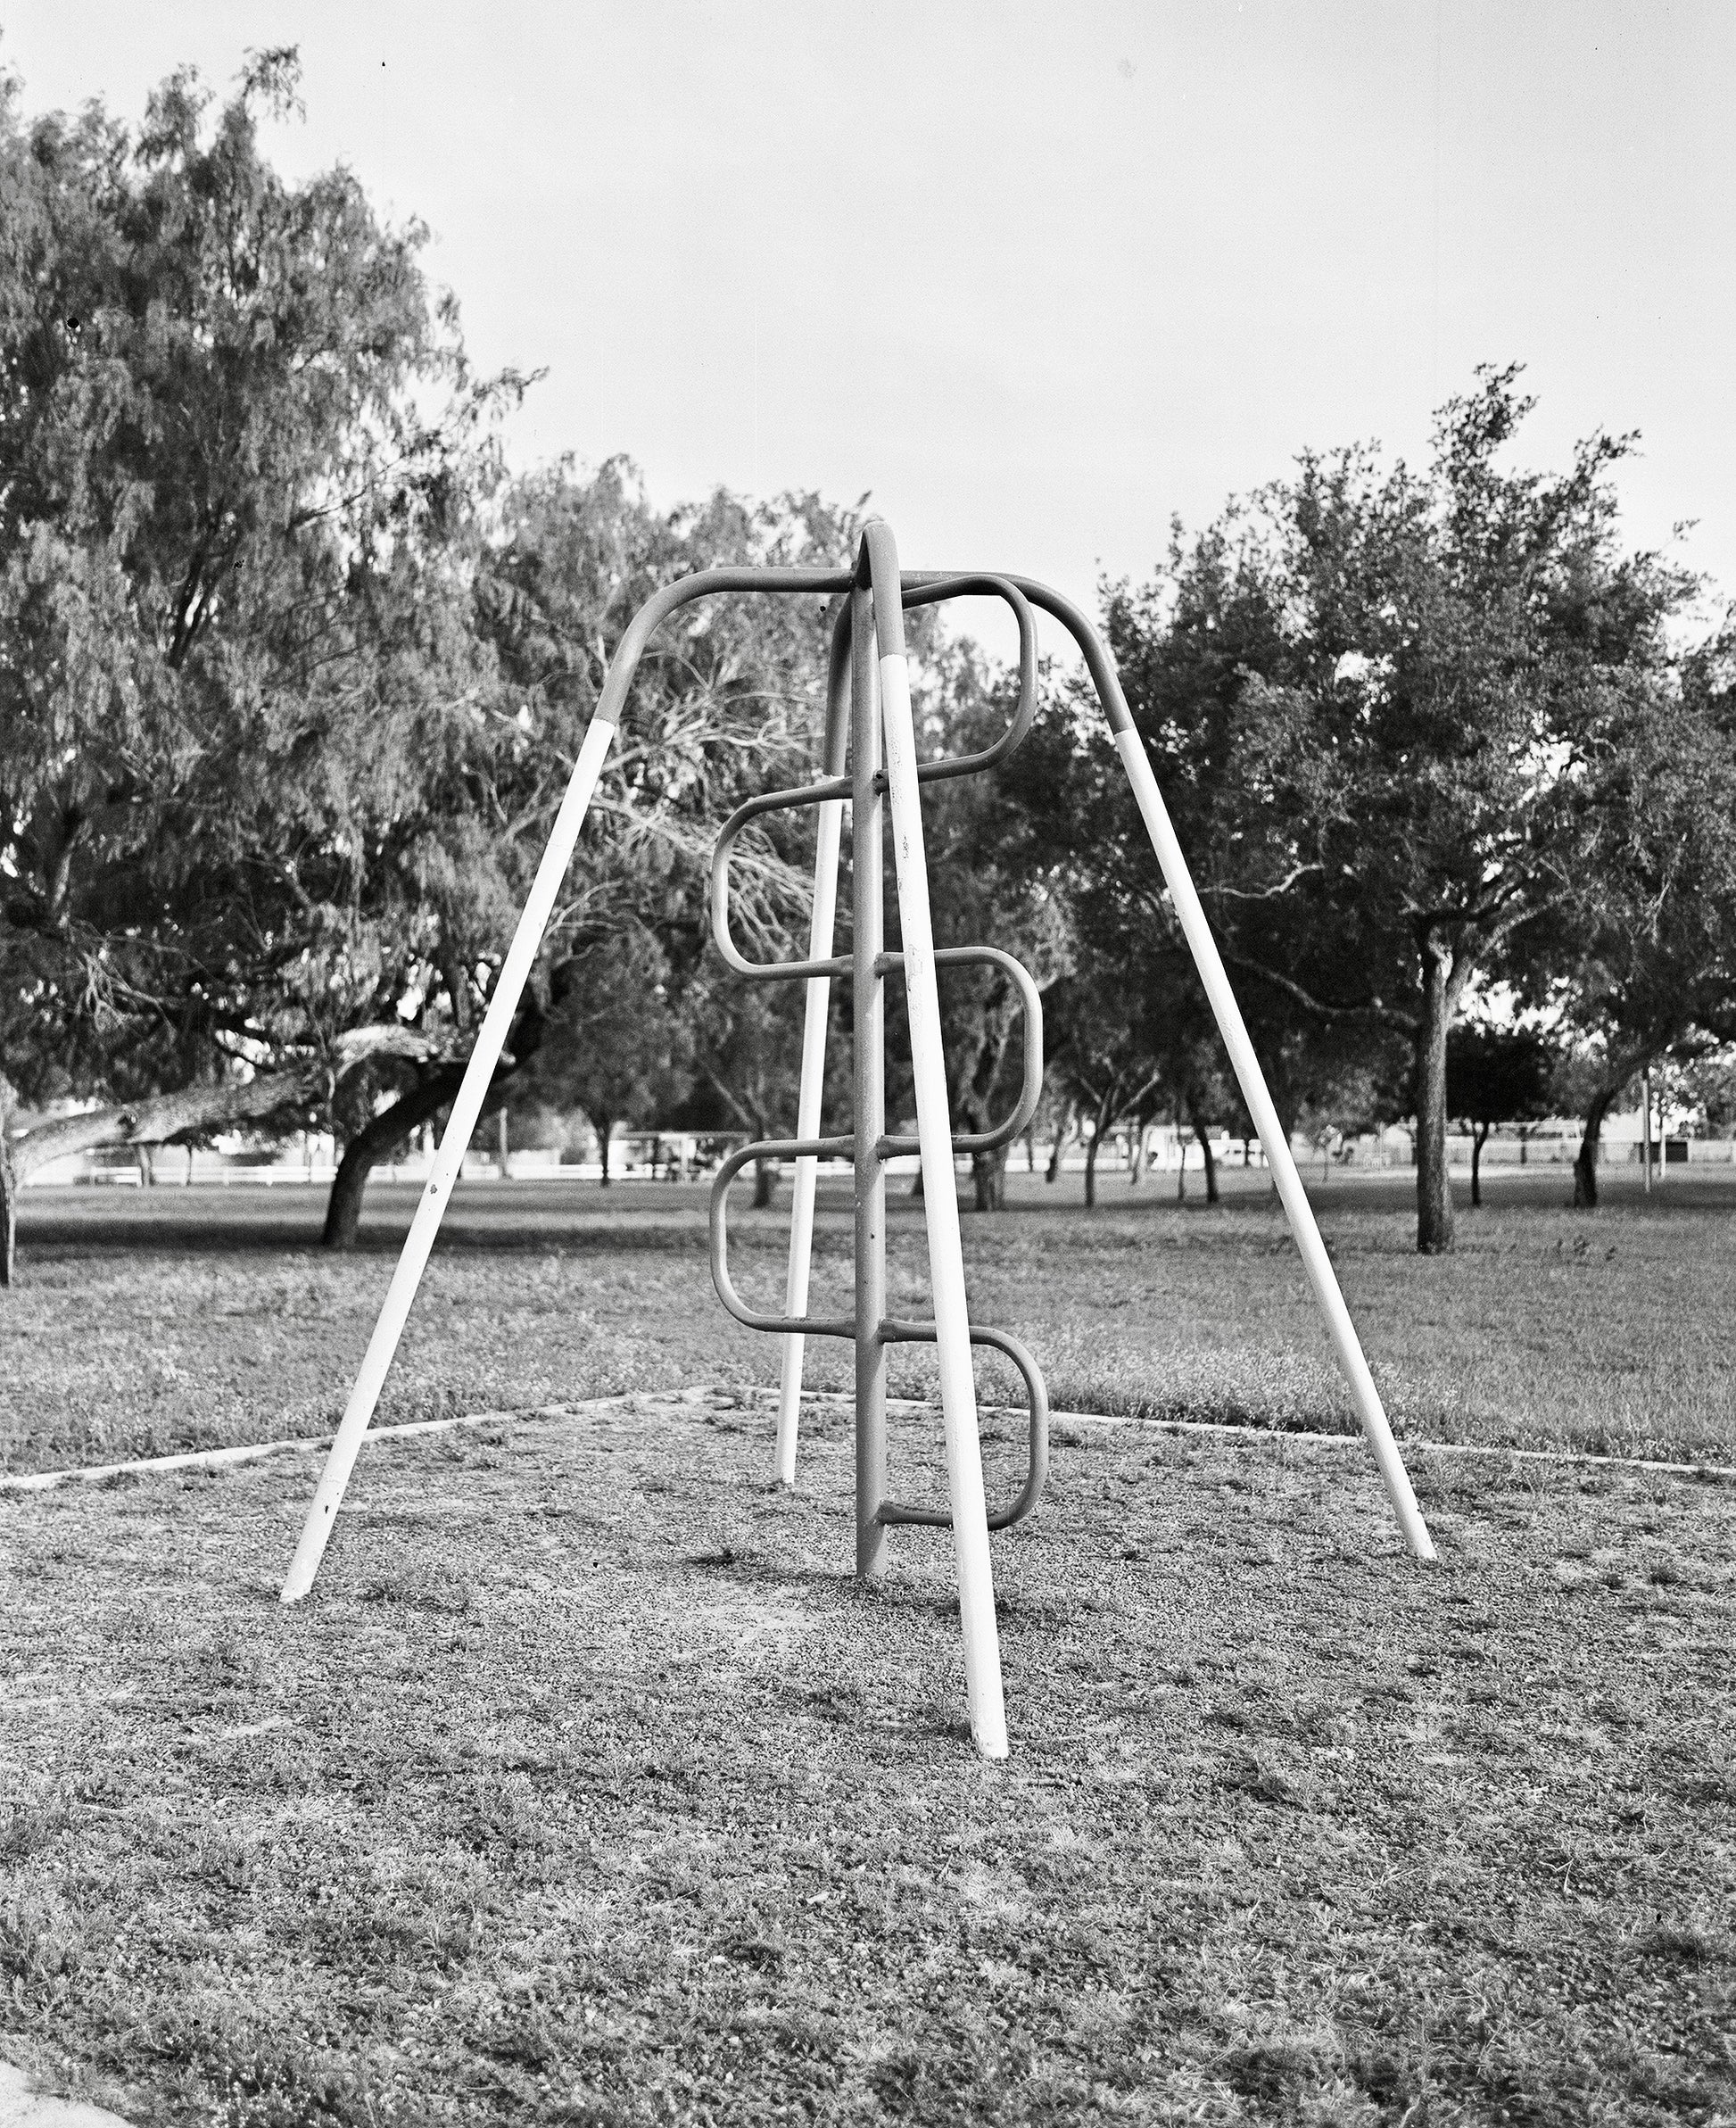 playground at la vista park, mcallen, adox chs 100 120 film